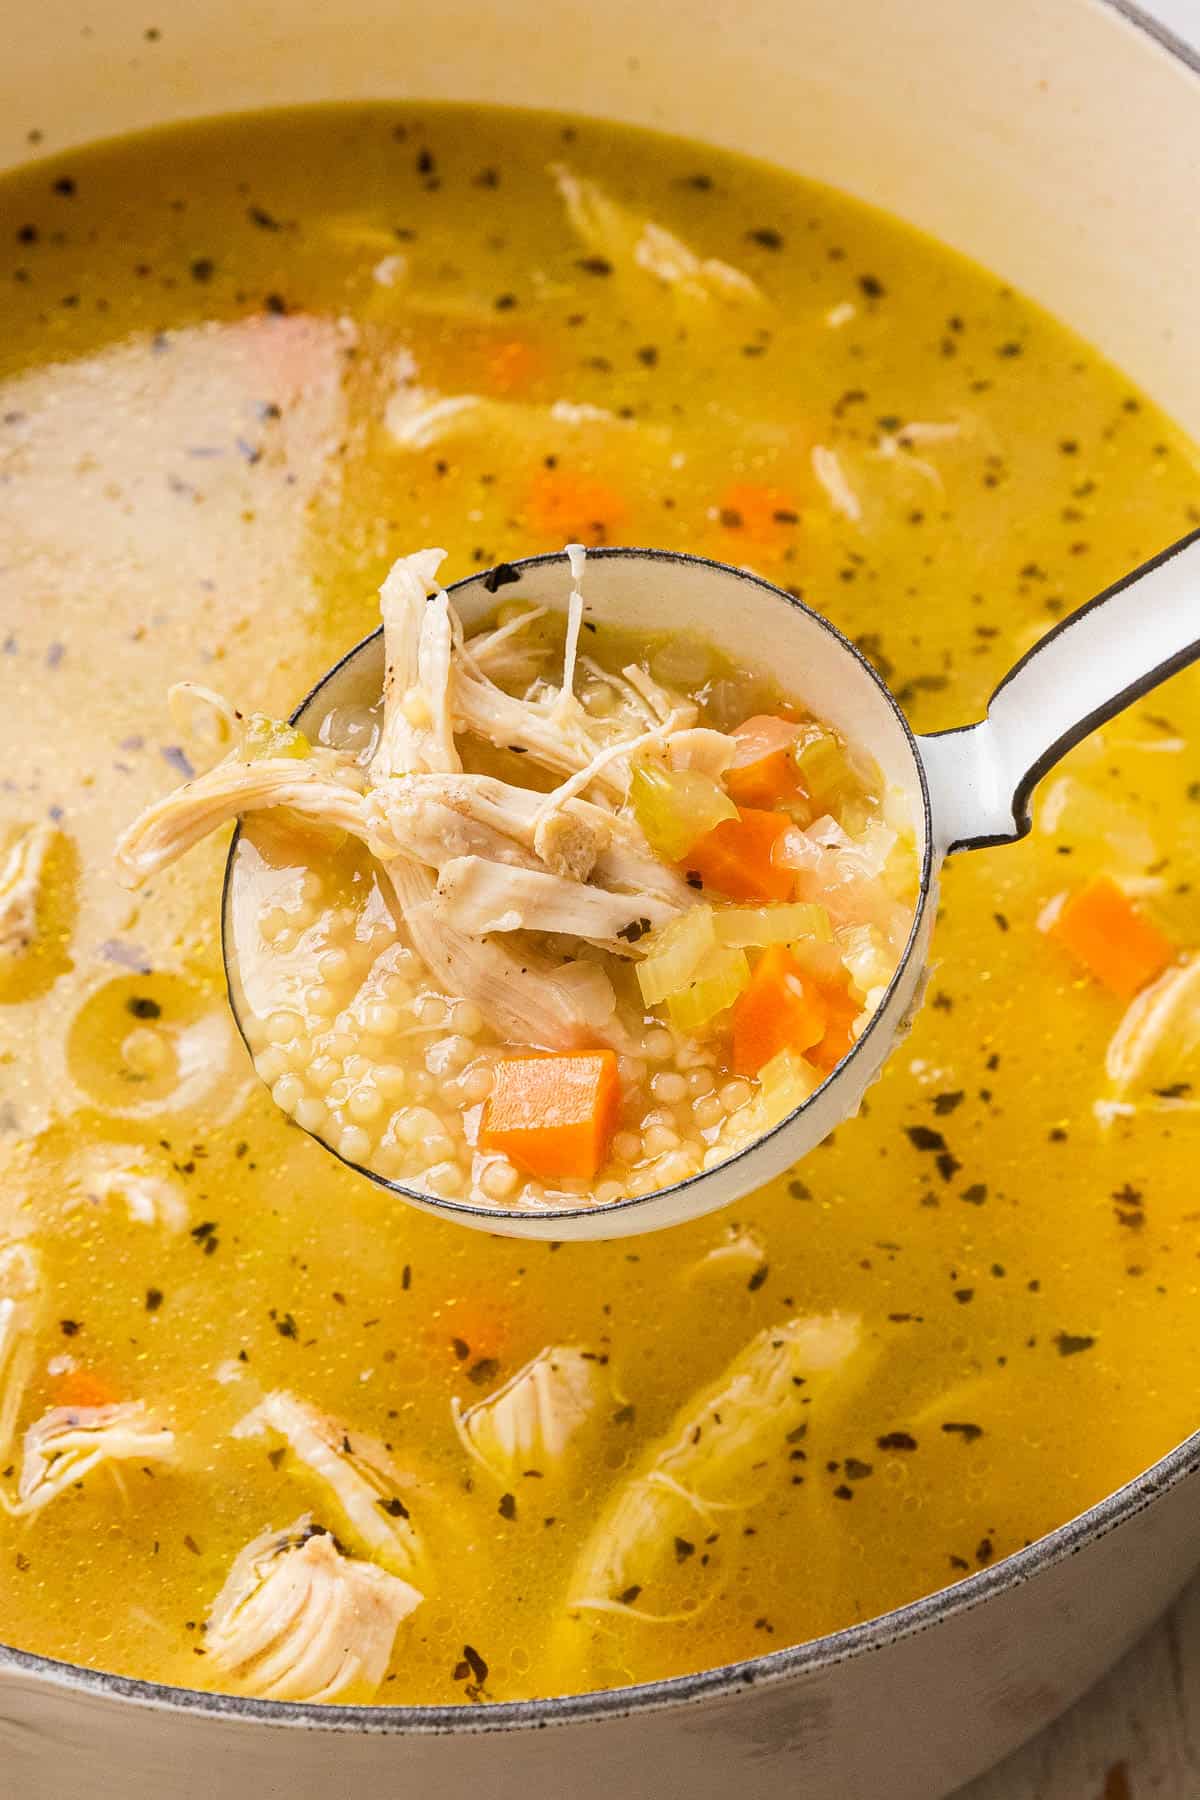 A ladle of soup.